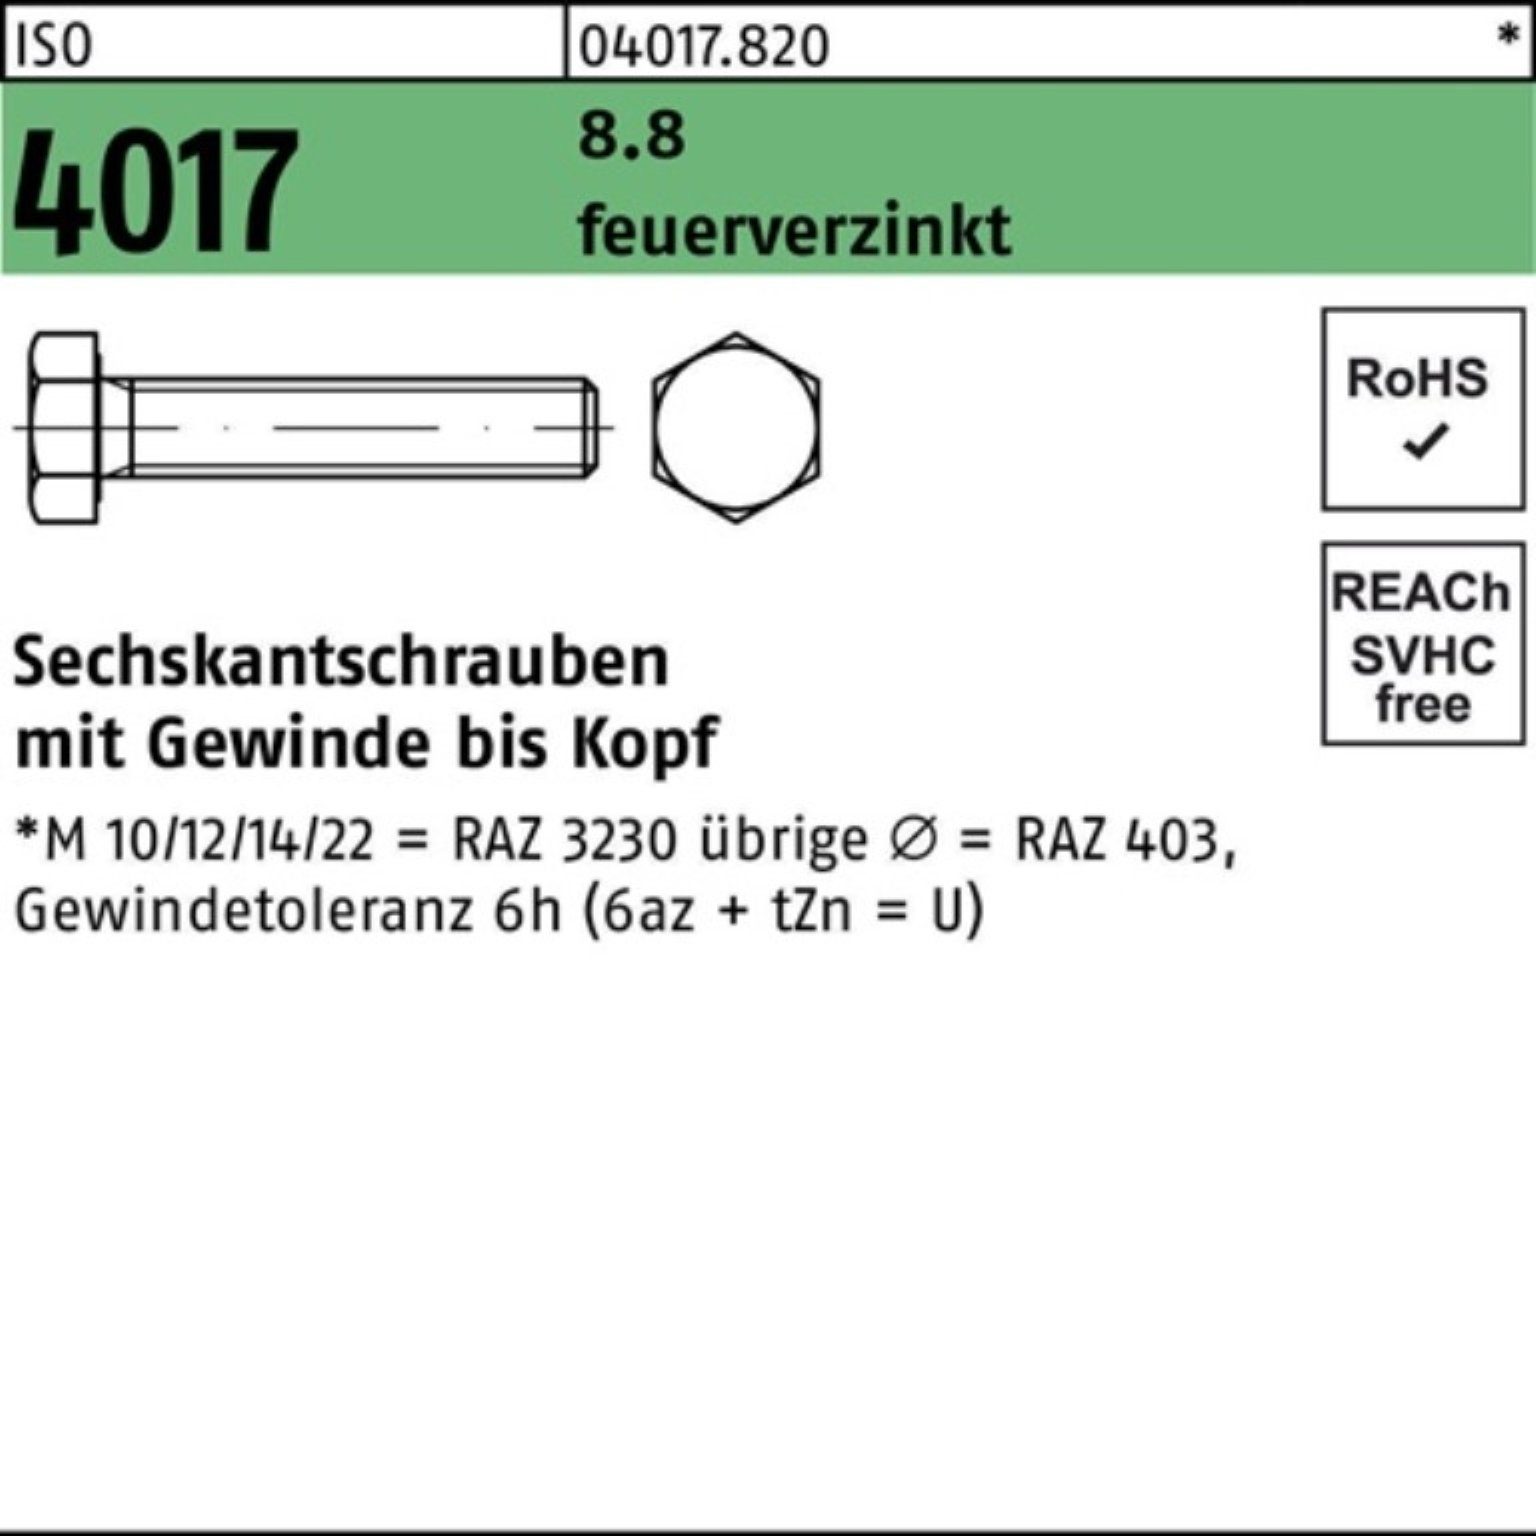 Bufab Sechskantschraube 100er Pack 180 8.8 feuerverz. Sechskantschraube 4017 St VG ISO M16x 25